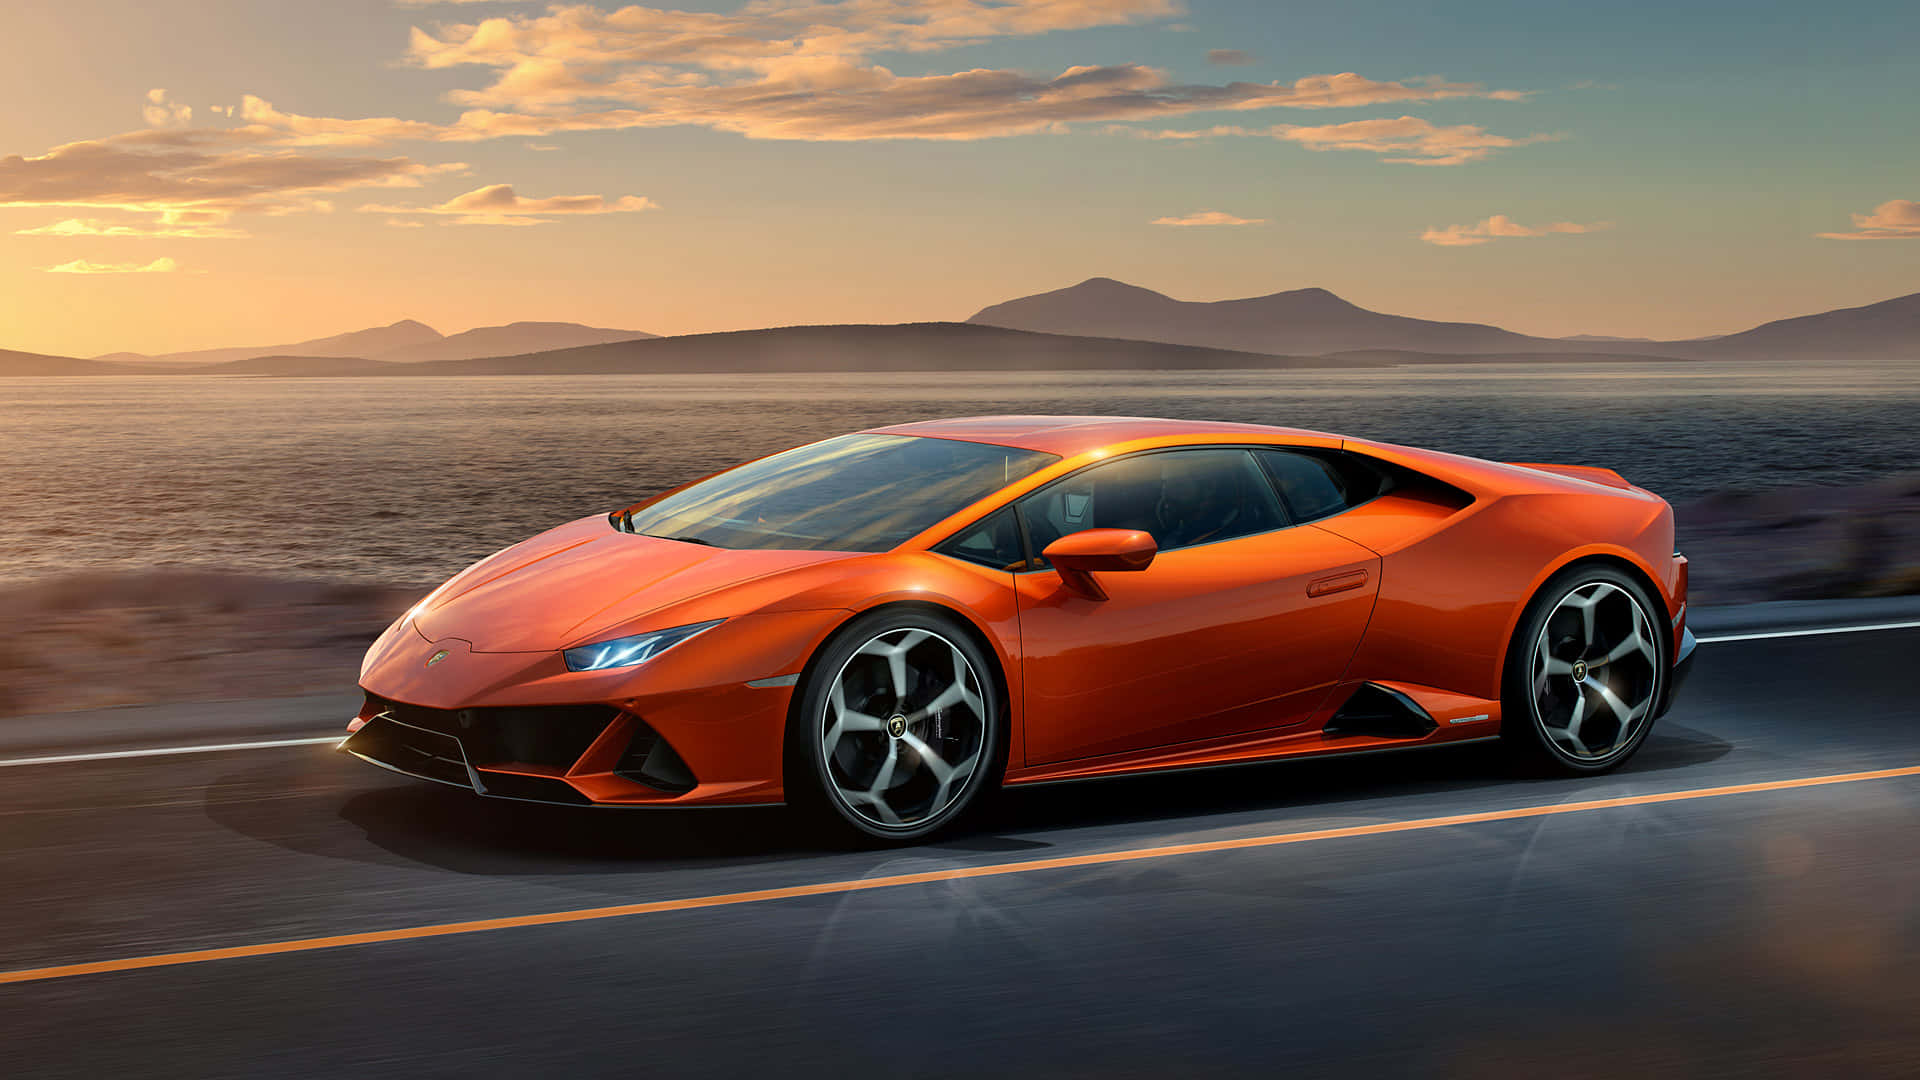 Derorangefarbene Lamborghini Huracan Fährt Die Straße Entlang.